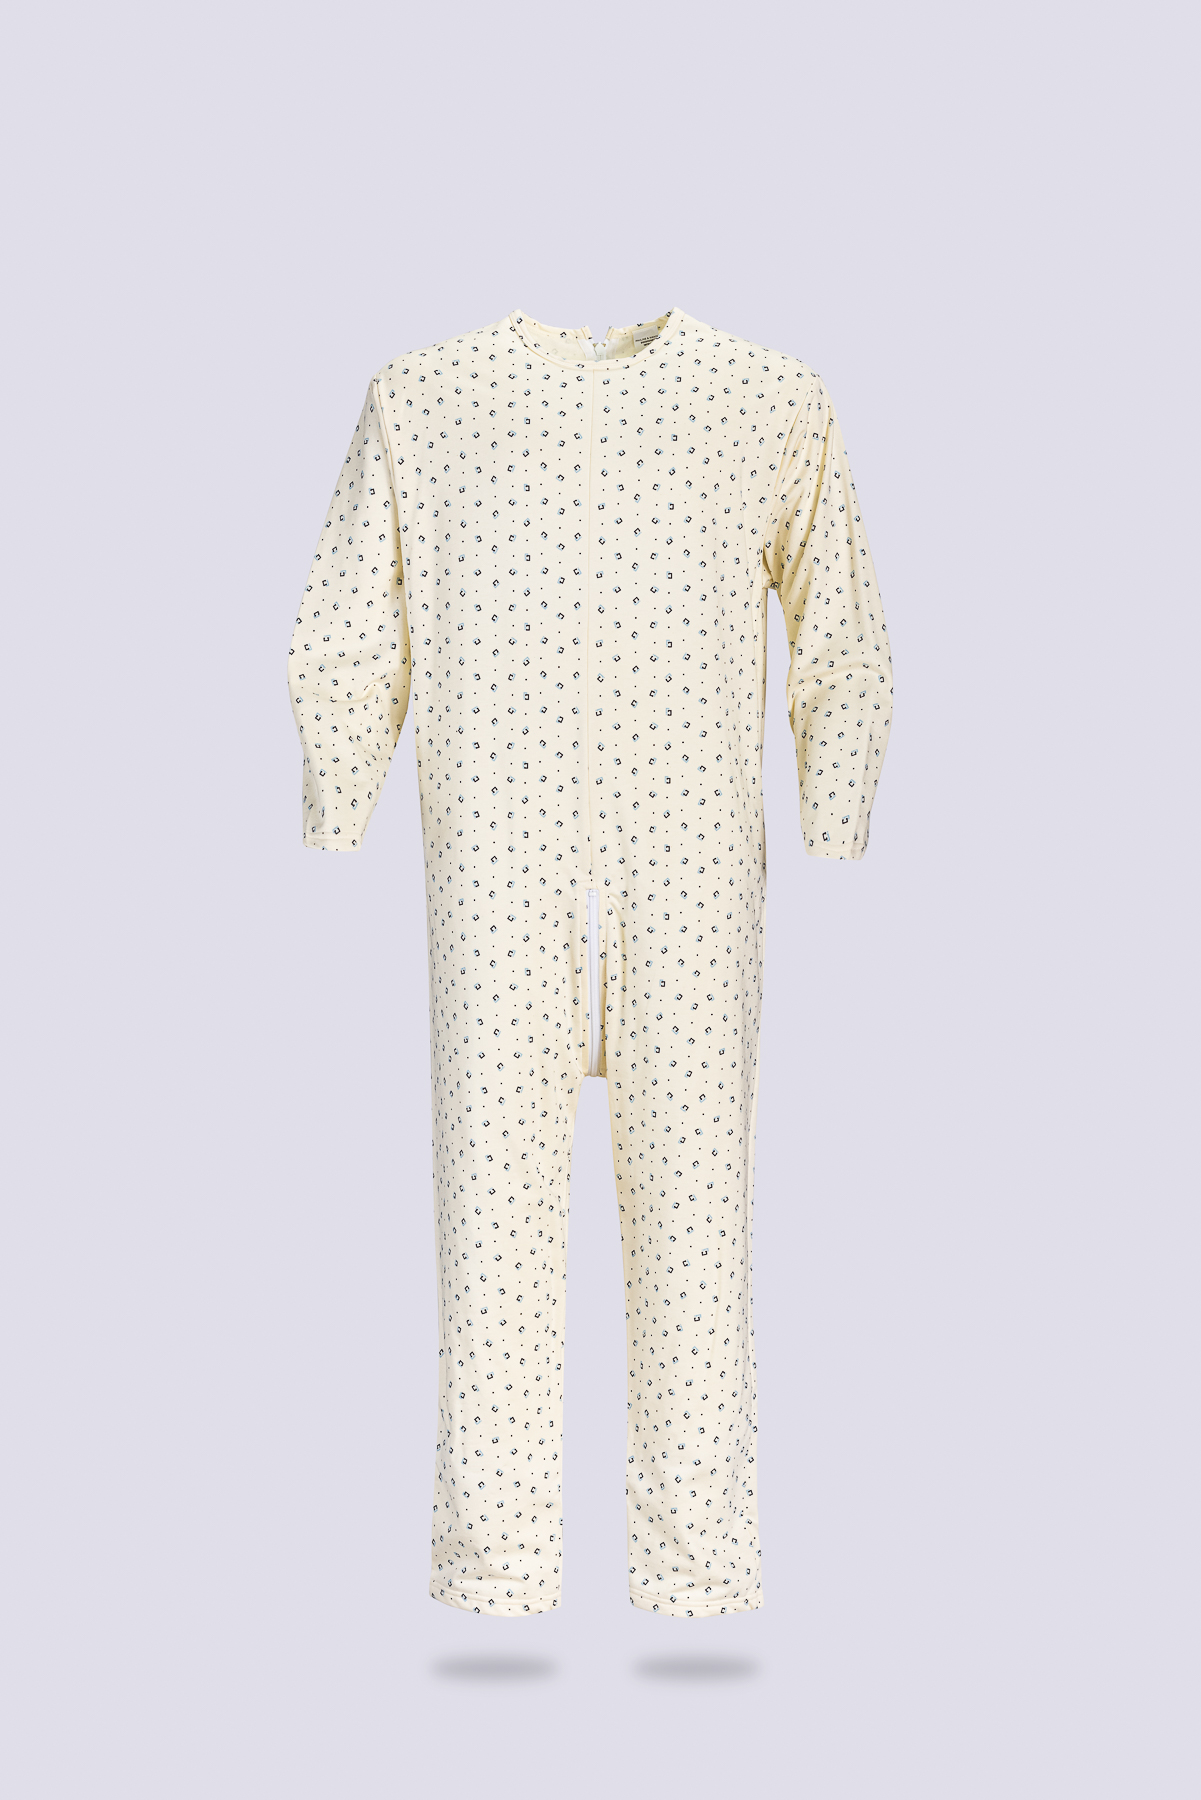 Pyjama pour femme senior facile à enfiler (ouverture boutons à l'avant)